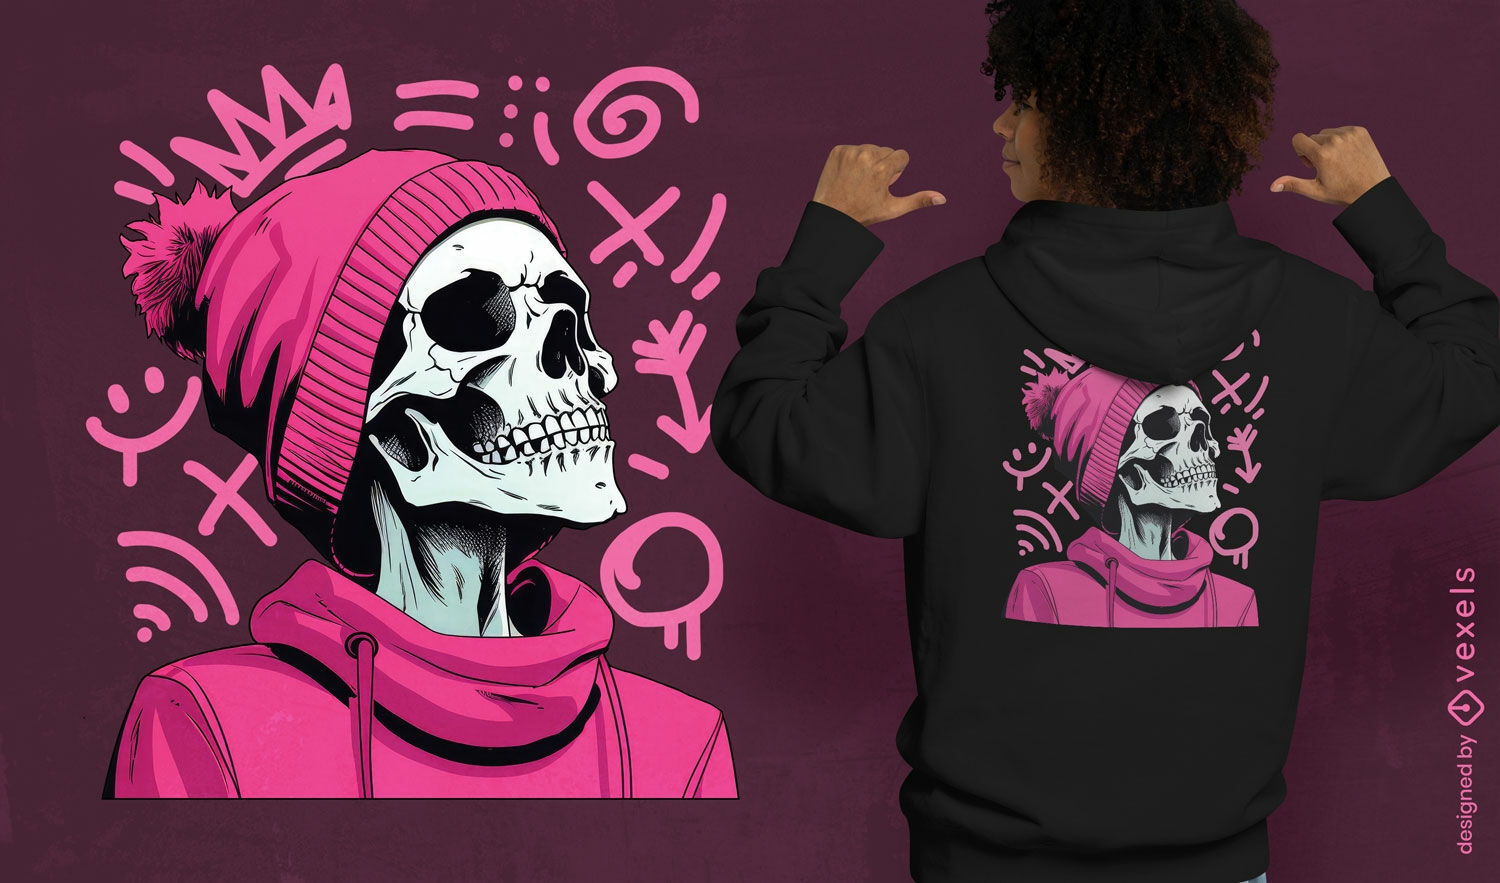 Esqueleto con dise?o de camiseta con capucha rosa.